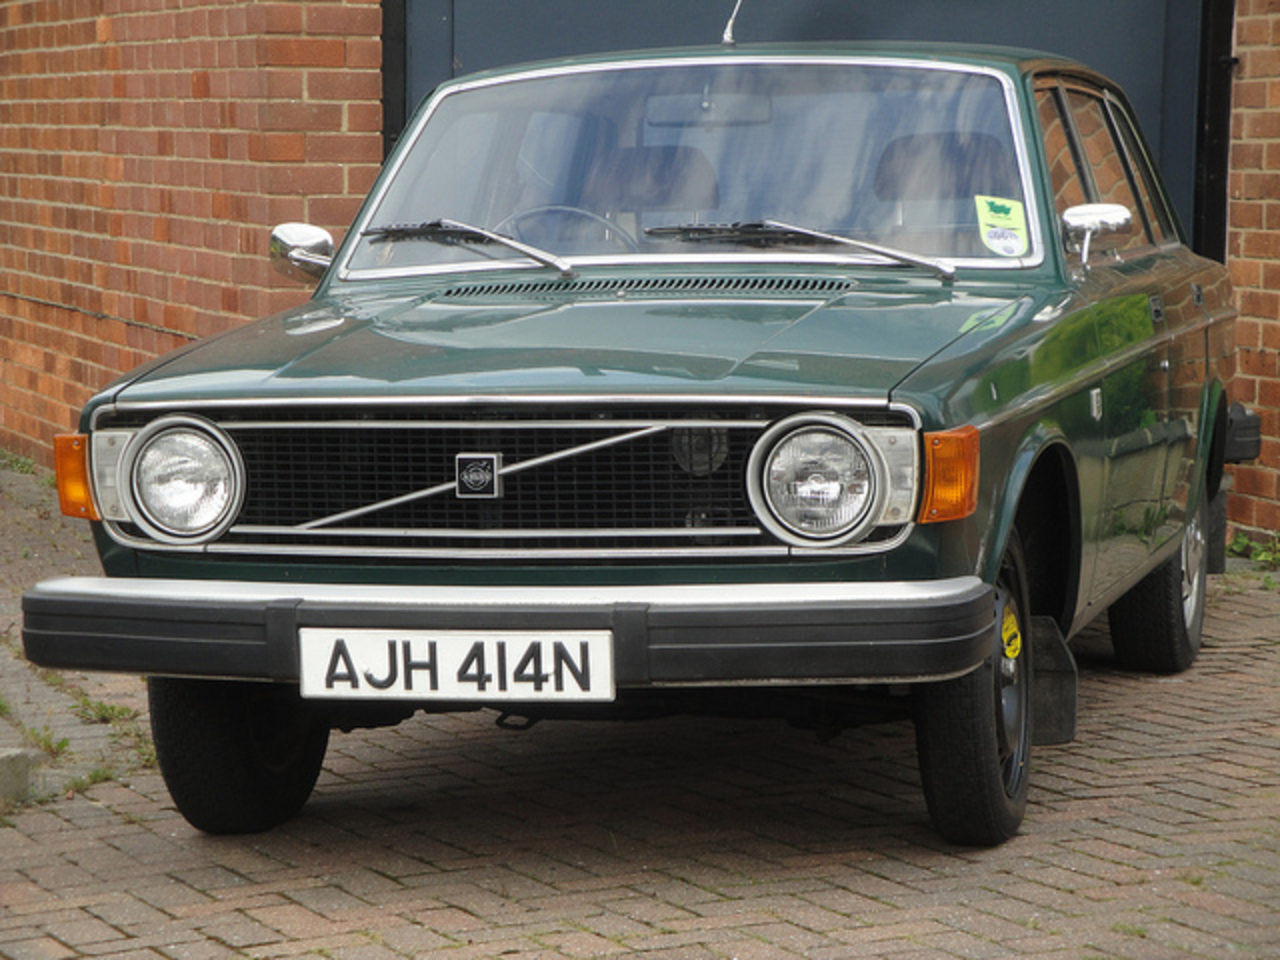 1974 Volvo 144 DL / Flickr - Partage de photos!